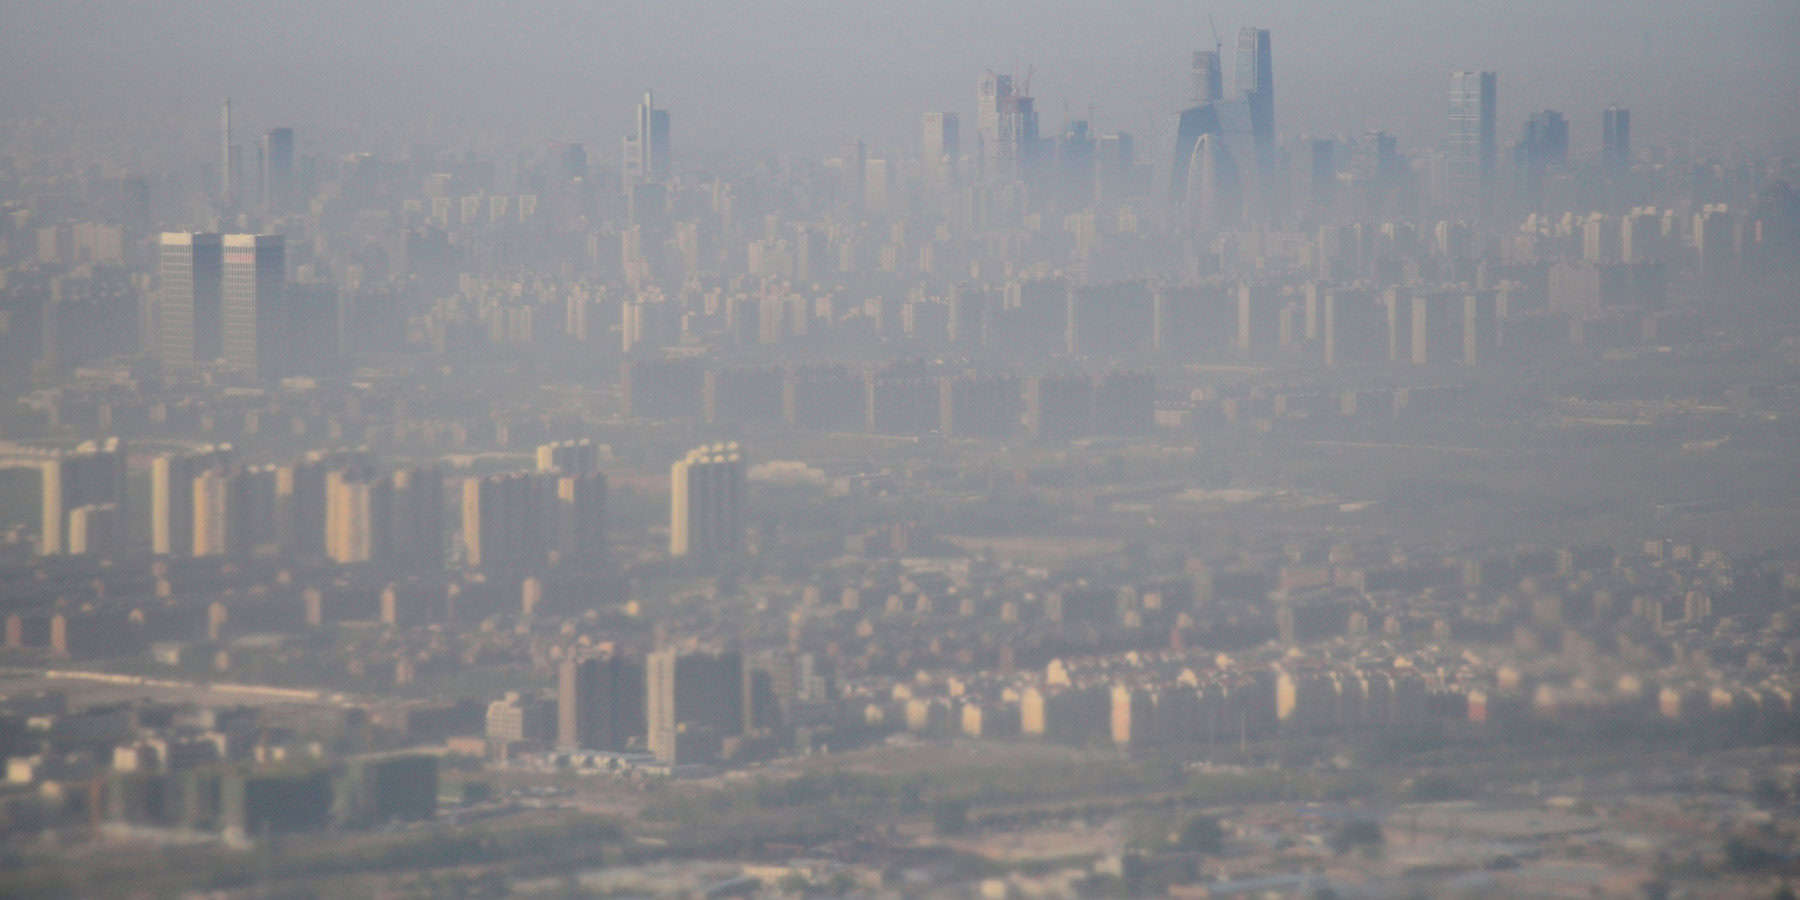 Redukcja emisji bez działania. Chińskie metropolie przenosiły tę odpowiedzialność na inne miasta